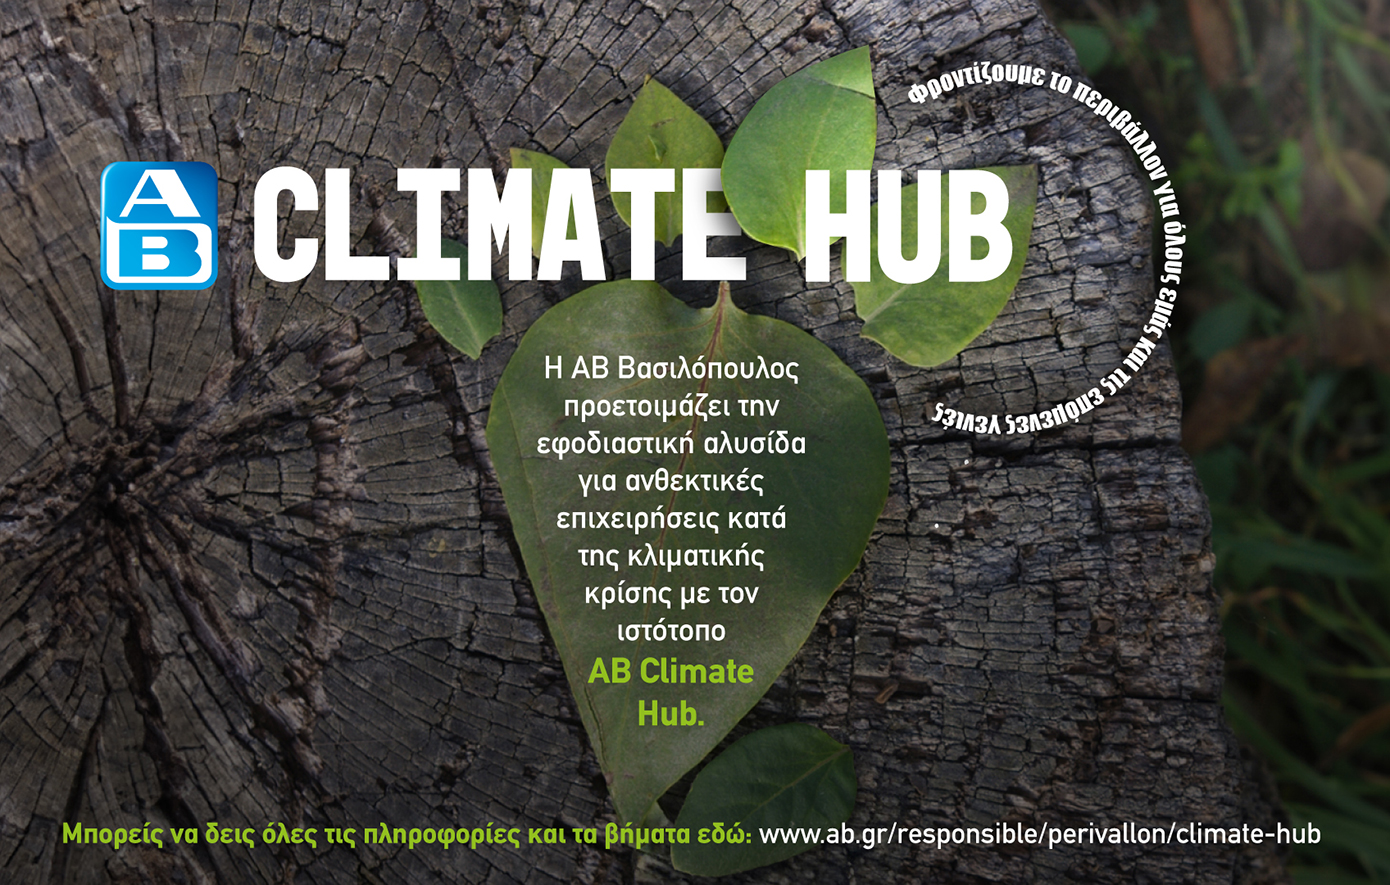 ΑΒ Climate Hub: ένα πρώτο βήμα για ανθεκτικές επιχειρήσεις κατά της κλιματικής κρίσης